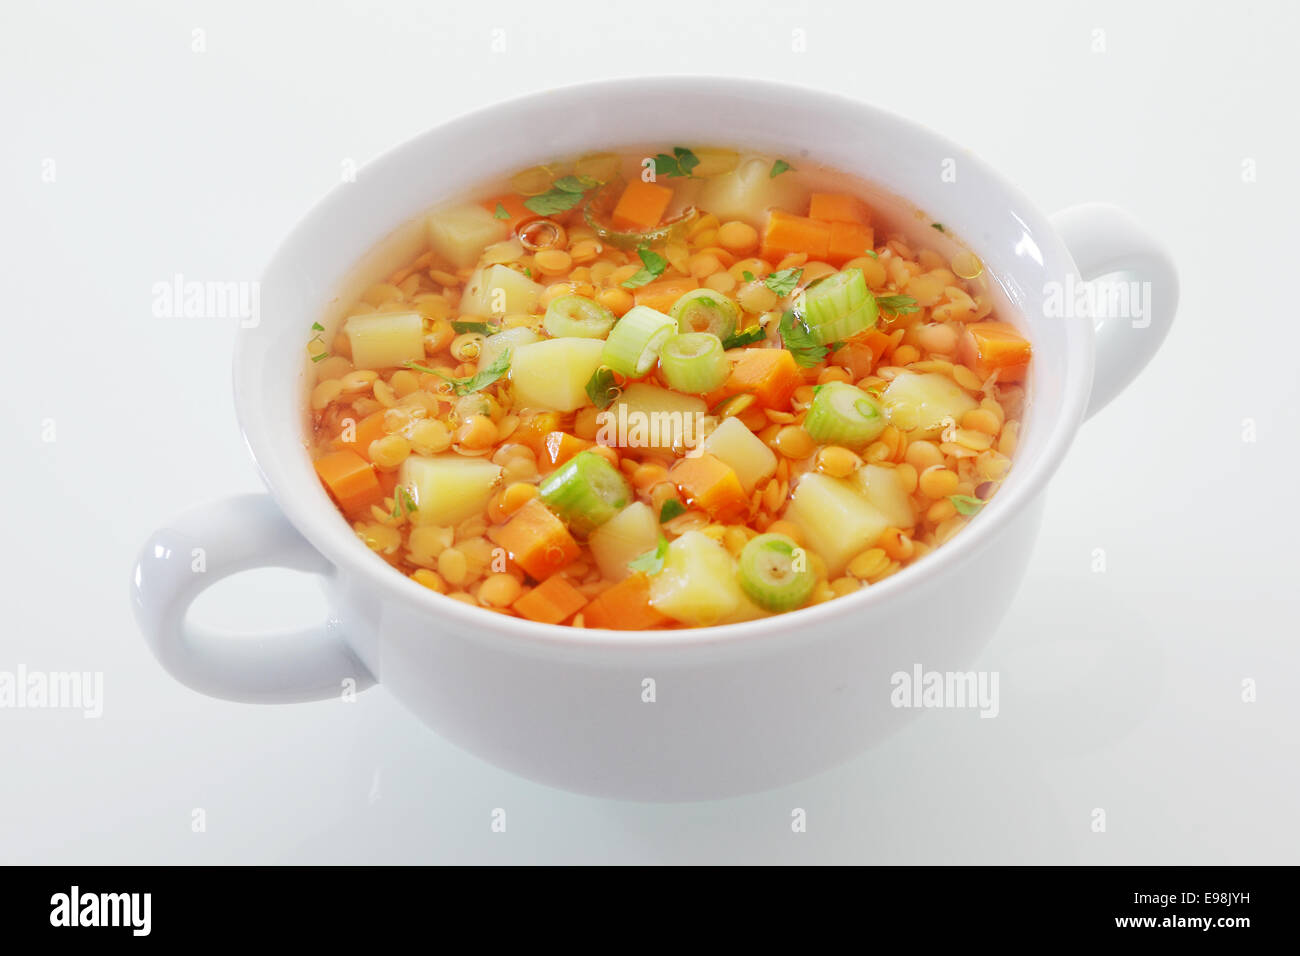 La cocina vegetariana comida nutritiva con un plato de lentejas, sopa de puerro y zanahoria, ricos en proteínas y fibra dietética Foto de stock